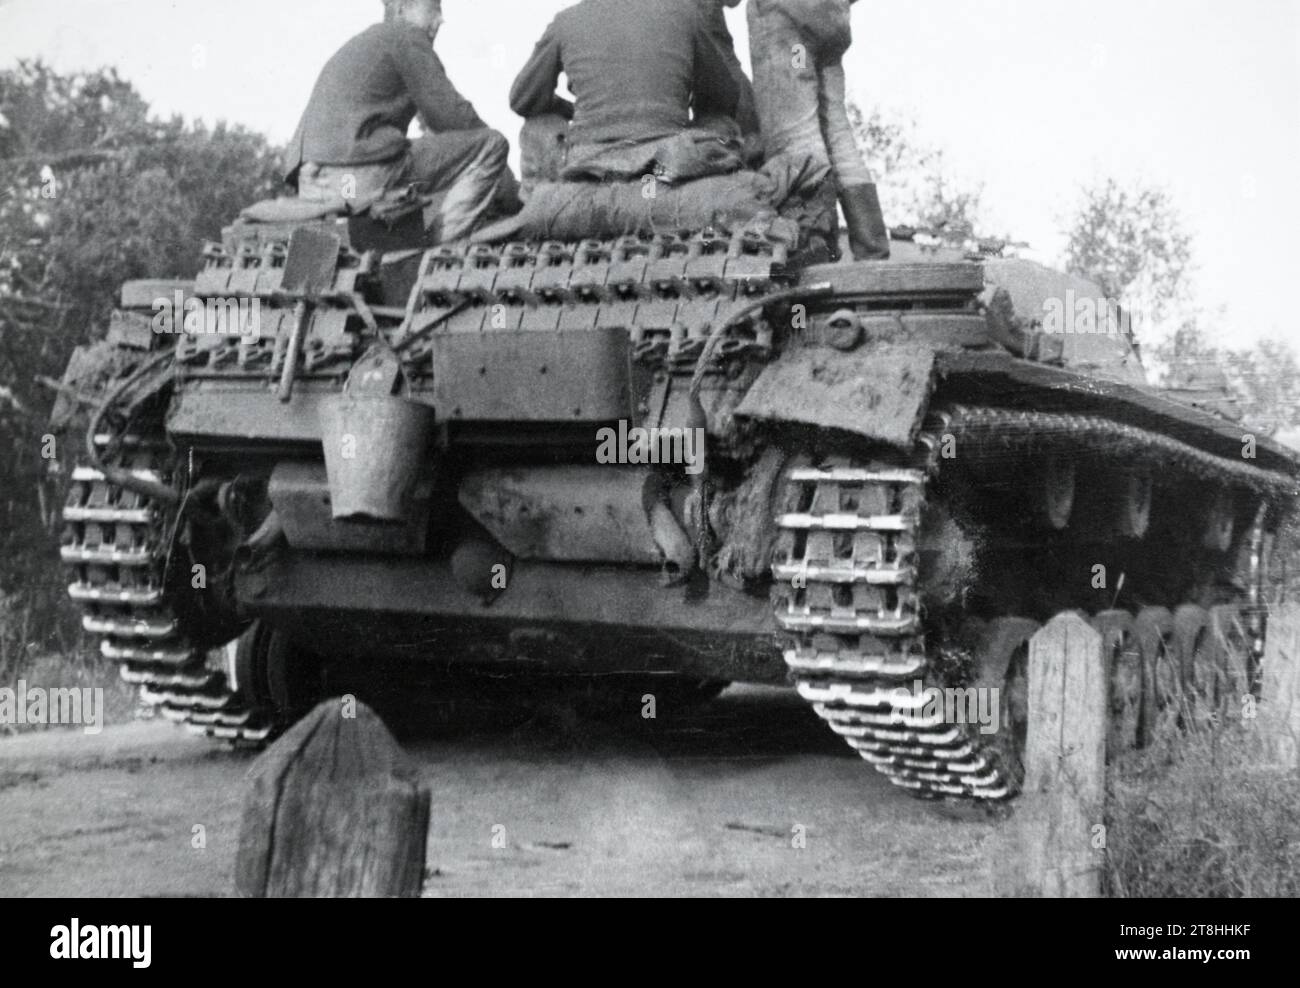 Rückansicht eines Sturmgeschütz III. Sturmgeschütz während des Zweiten Weltkriegs. Stockfoto